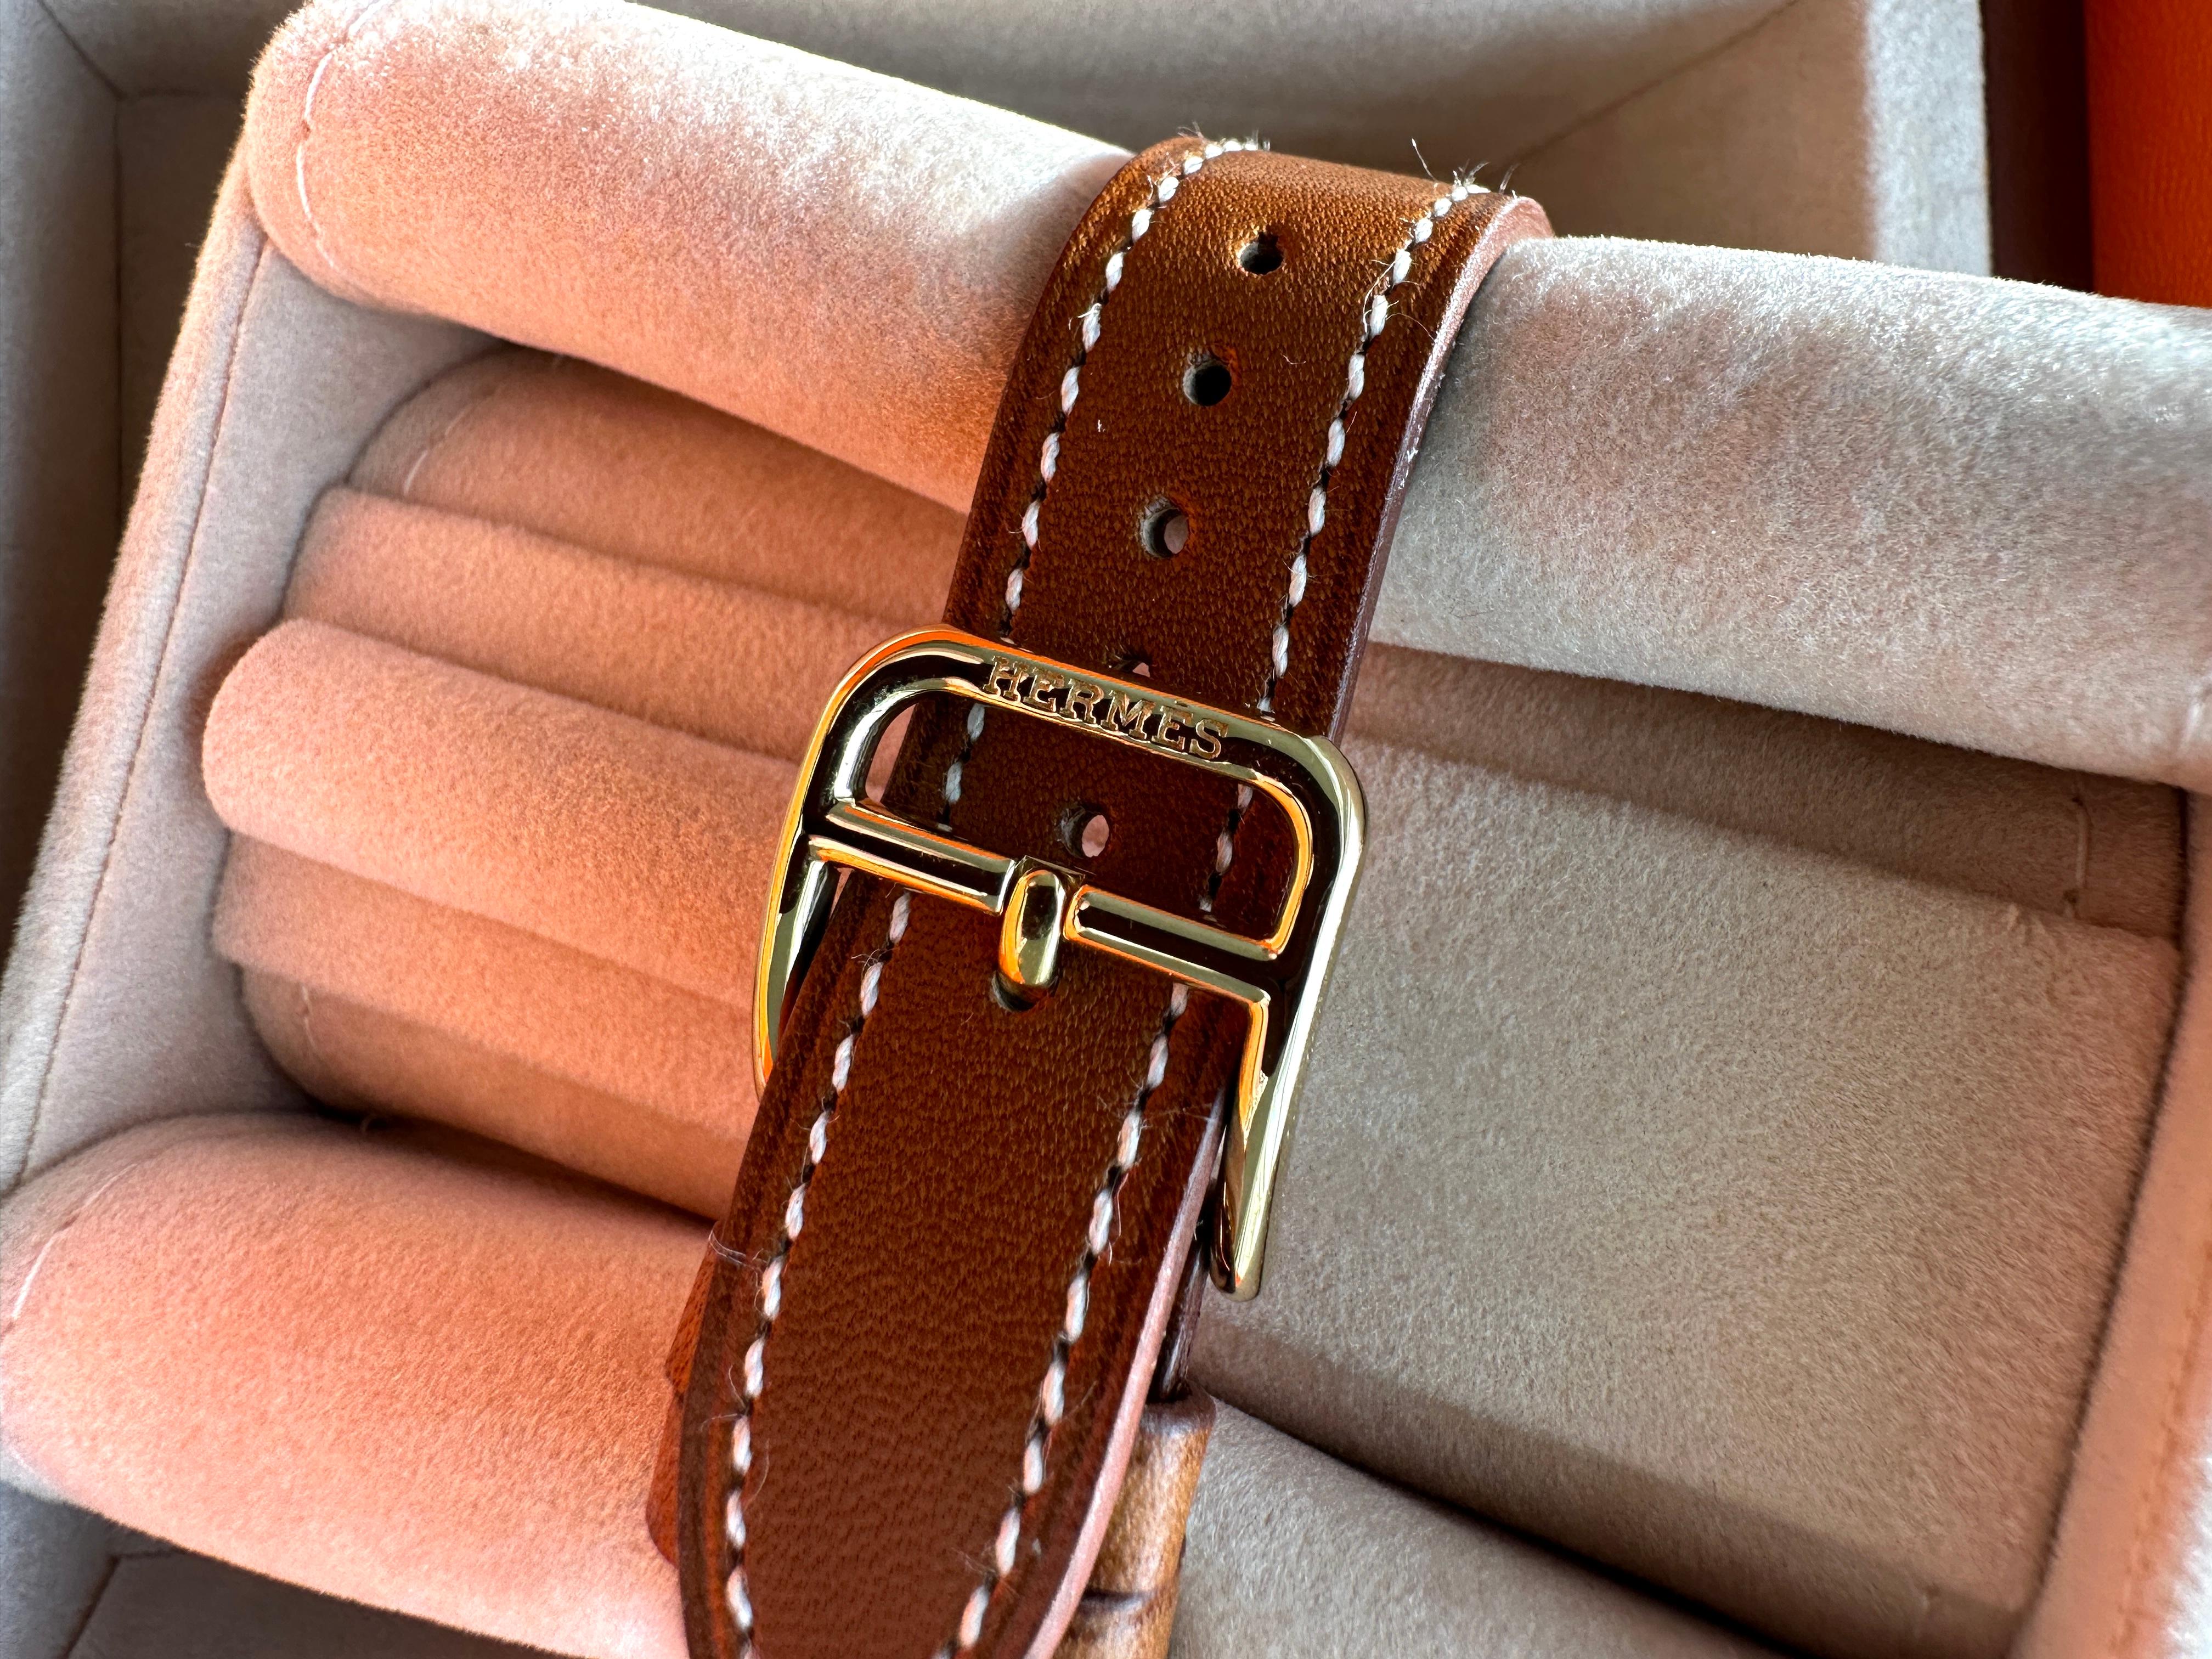 Hermes Heure H 25mm Uhr
Barenia

Uhr aus gelbvergoldetem Stahl, Quarzwerk, weißes Zifferblatt, langes, austauschbares Armband aus natürlichem Barenia-Kalbsleder

Die Uhr wird in der Schweiz hergestellt
Das Armband wird in Frankreich